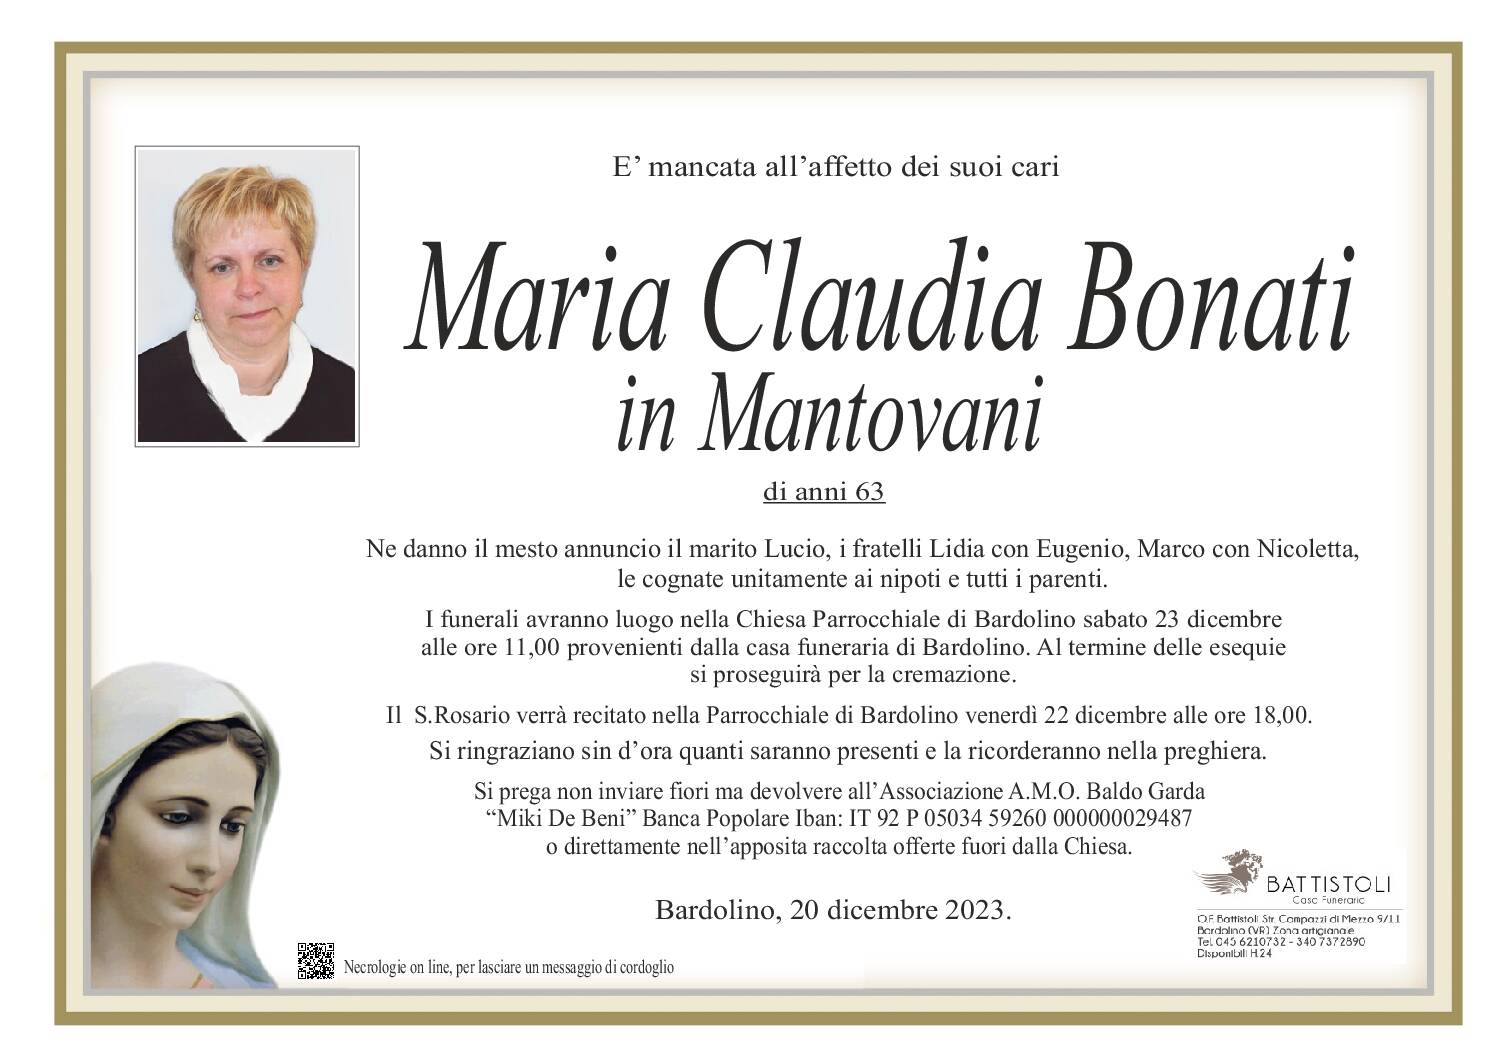 Bonati Maria Claudia